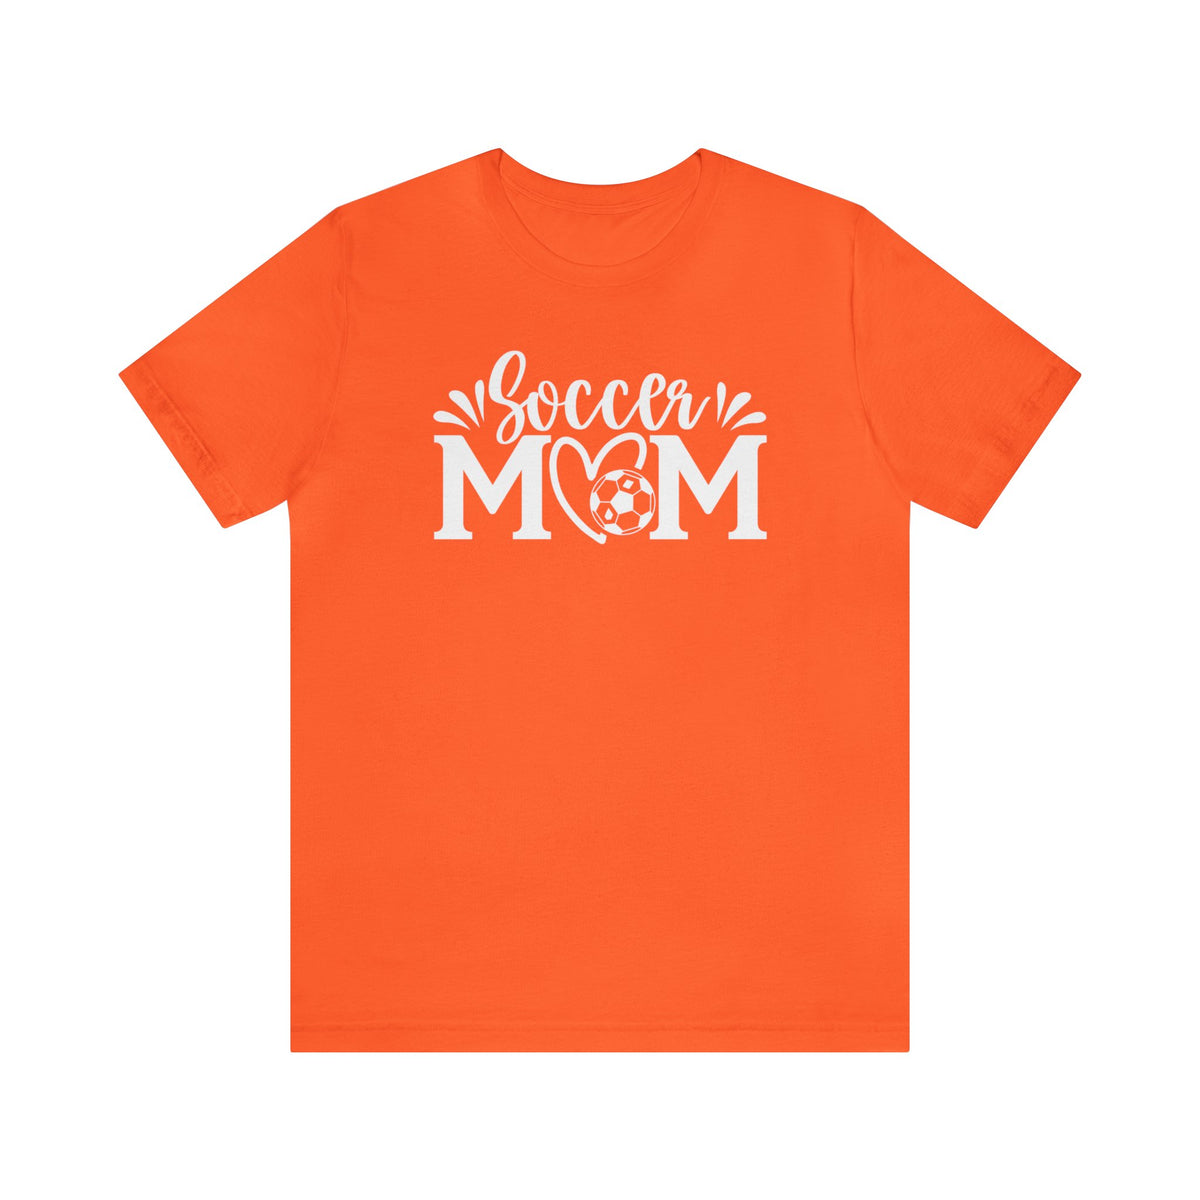 Soccer Mom Shirt | Soccer Mom Gift